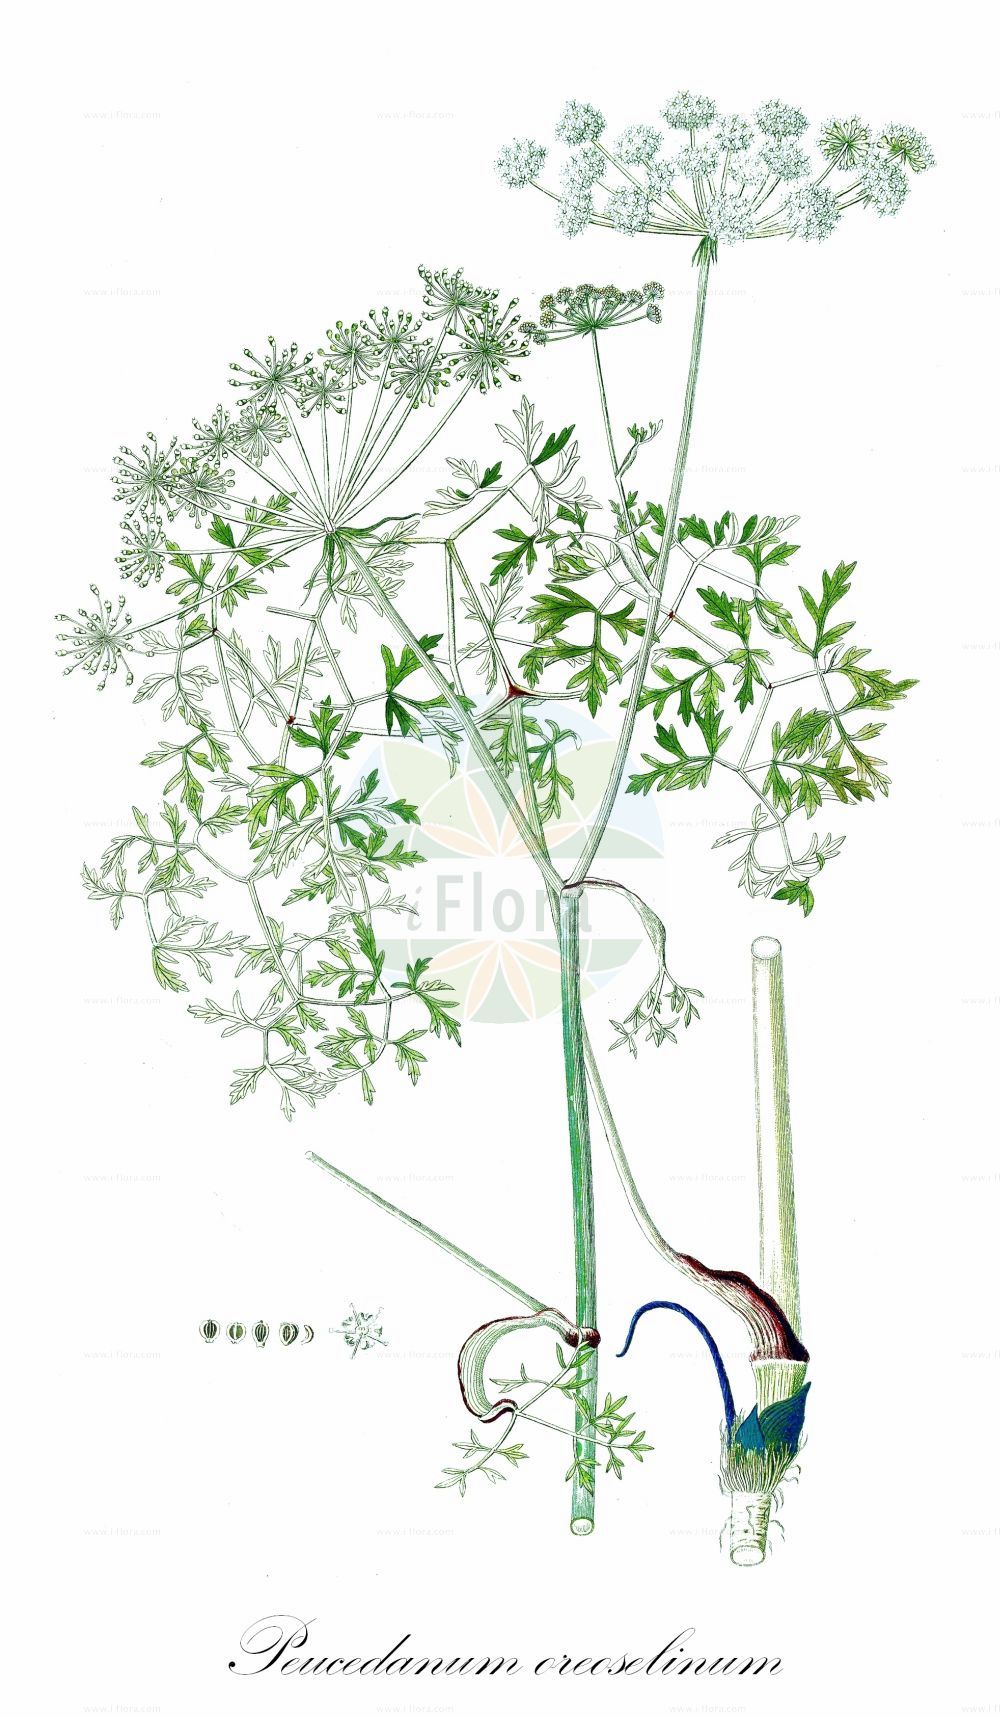 Historische Abbildung von Peucedanum oreoselinum (Berg-Haarstrang - Mountain Parsley). Das Bild zeigt Blatt, Bluete, Frucht und Same. ---- Historical Drawing of Peucedanum oreoselinum (Berg-Haarstrang - Mountain Parsley). The image is showing leaf, flower, fruit and seed.(Peucedanum oreoselinum,Berg-Haarstrang,Mountain Parsley,Athamanta oreoselinum,Oreoselinum nigrum,Peucedanum bourgaei,Peucedanum oreoselinum,Berg-Haarstrang,Mountain Parsley,Peucedanum,Haarstrang,Hog's Fennel,Apiaceae,Doldengewächse,Carrot family,Blatt,Bluete,Frucht,Same,leaf,flower,fruit,seed)